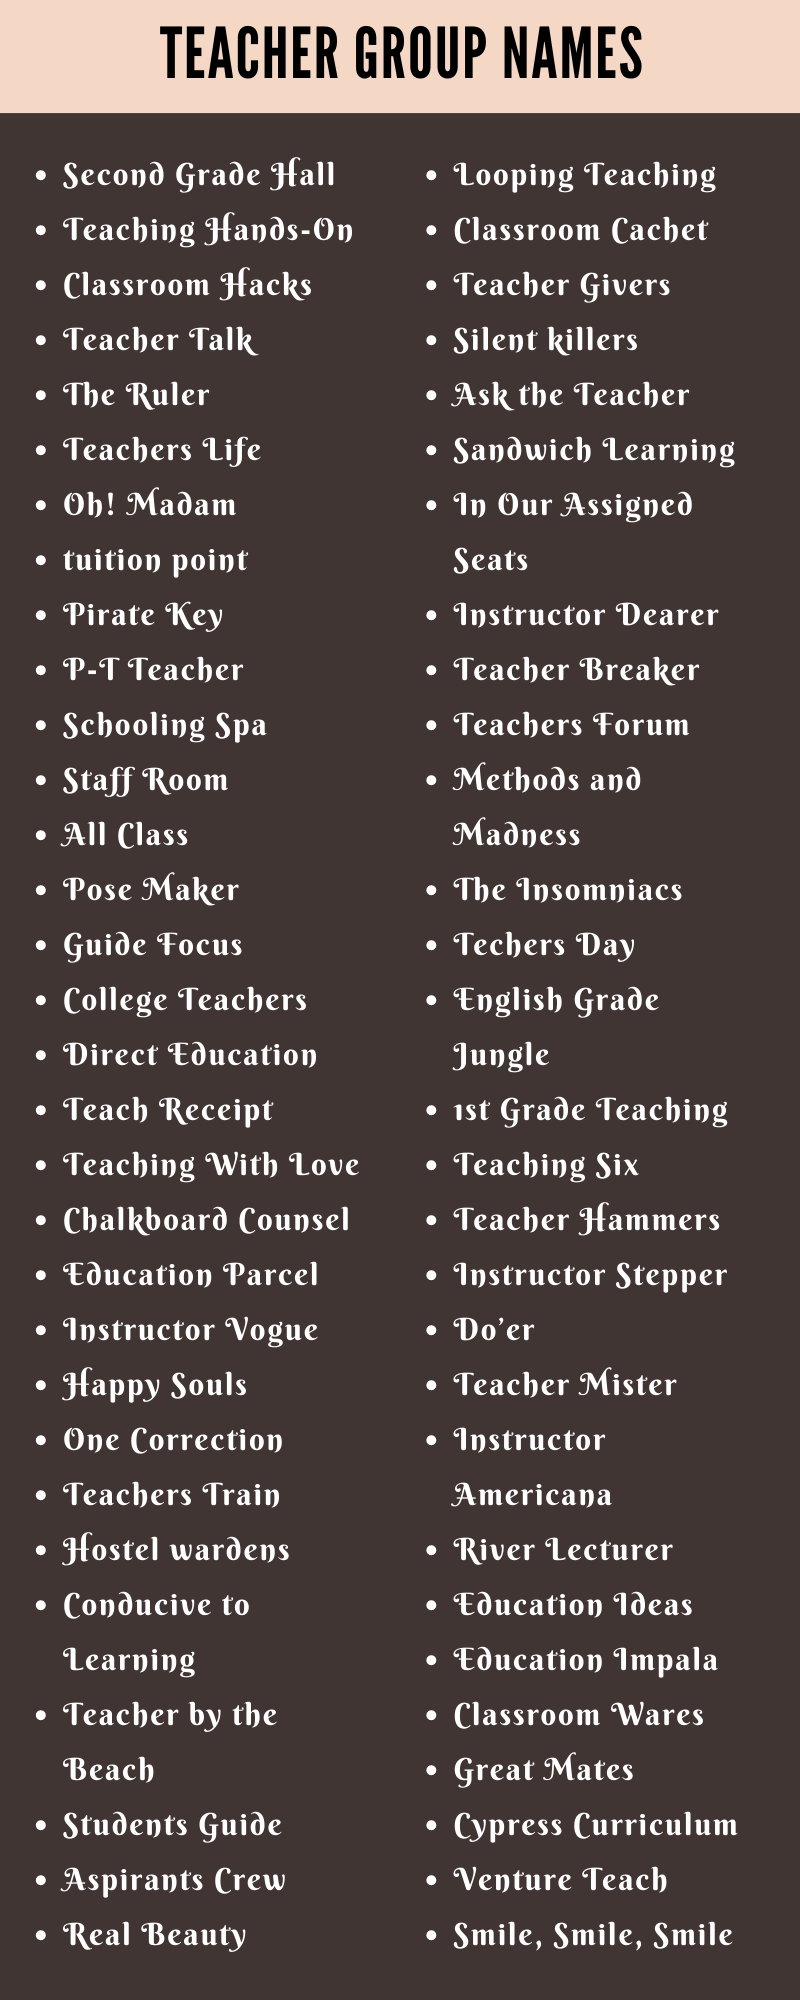 Teacher Group Names